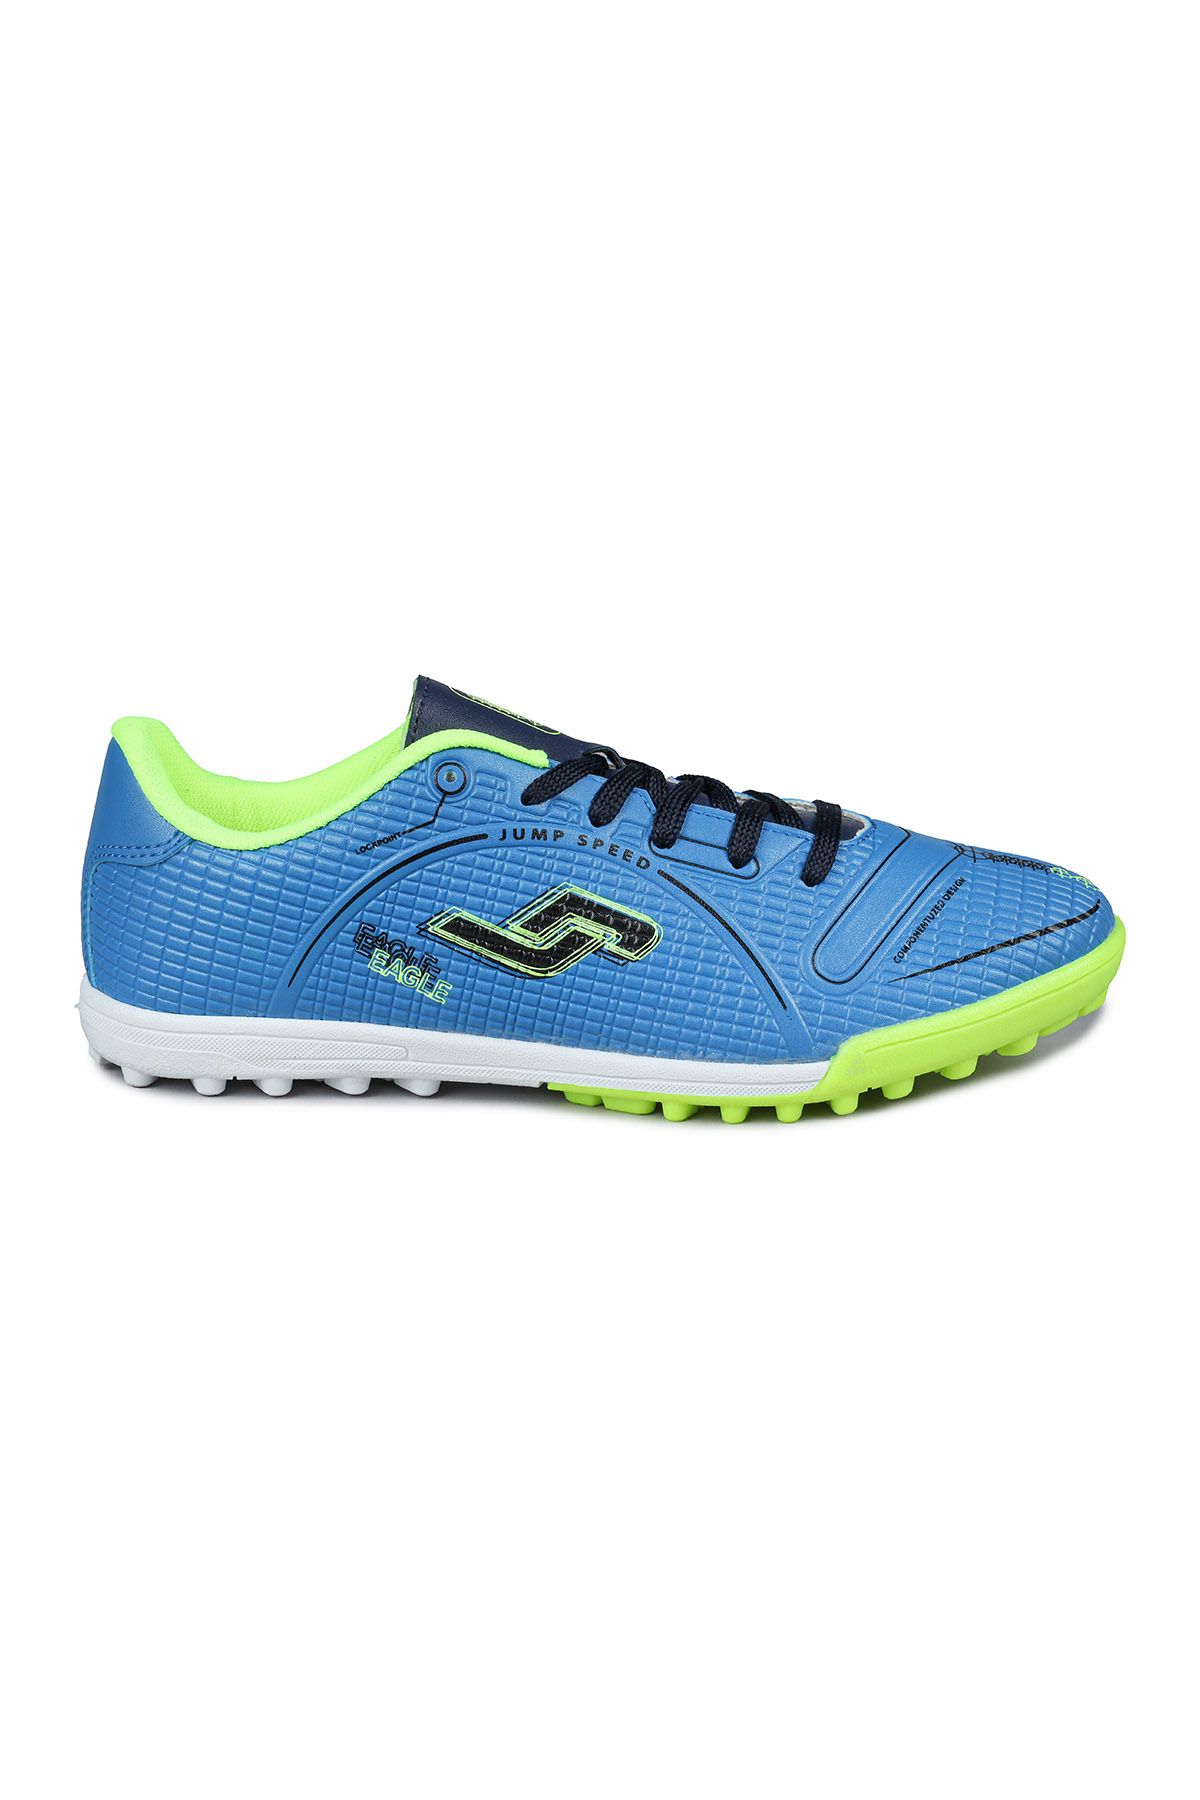 Jump 28006 Indigo Mavi - Neon Yeşil Halı Saha Krampon Futbol Ayakkabısı